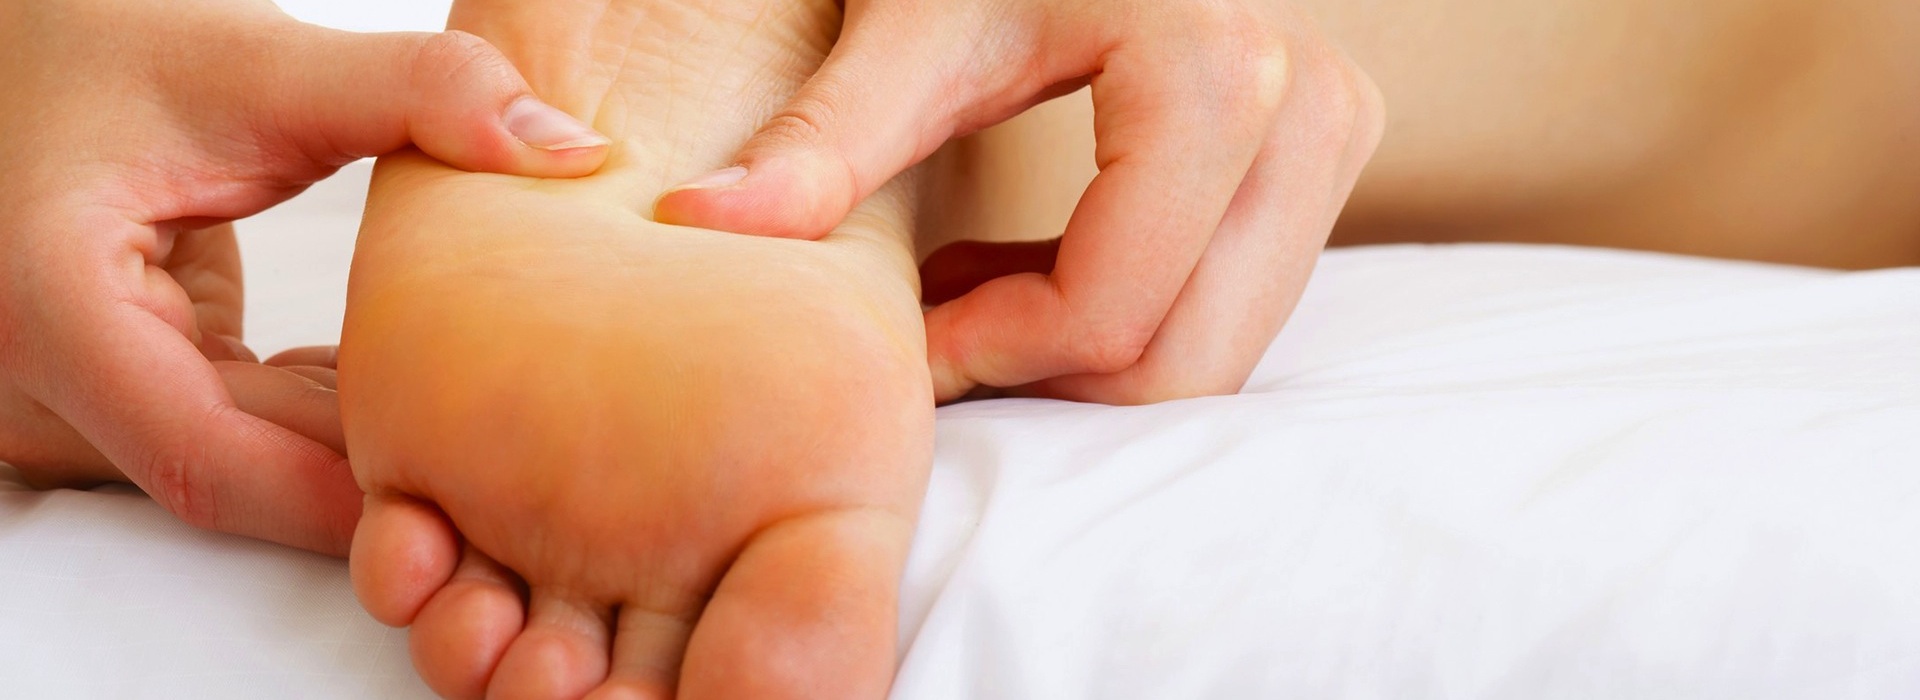 massage pieds - ecole de massage sensitif belge